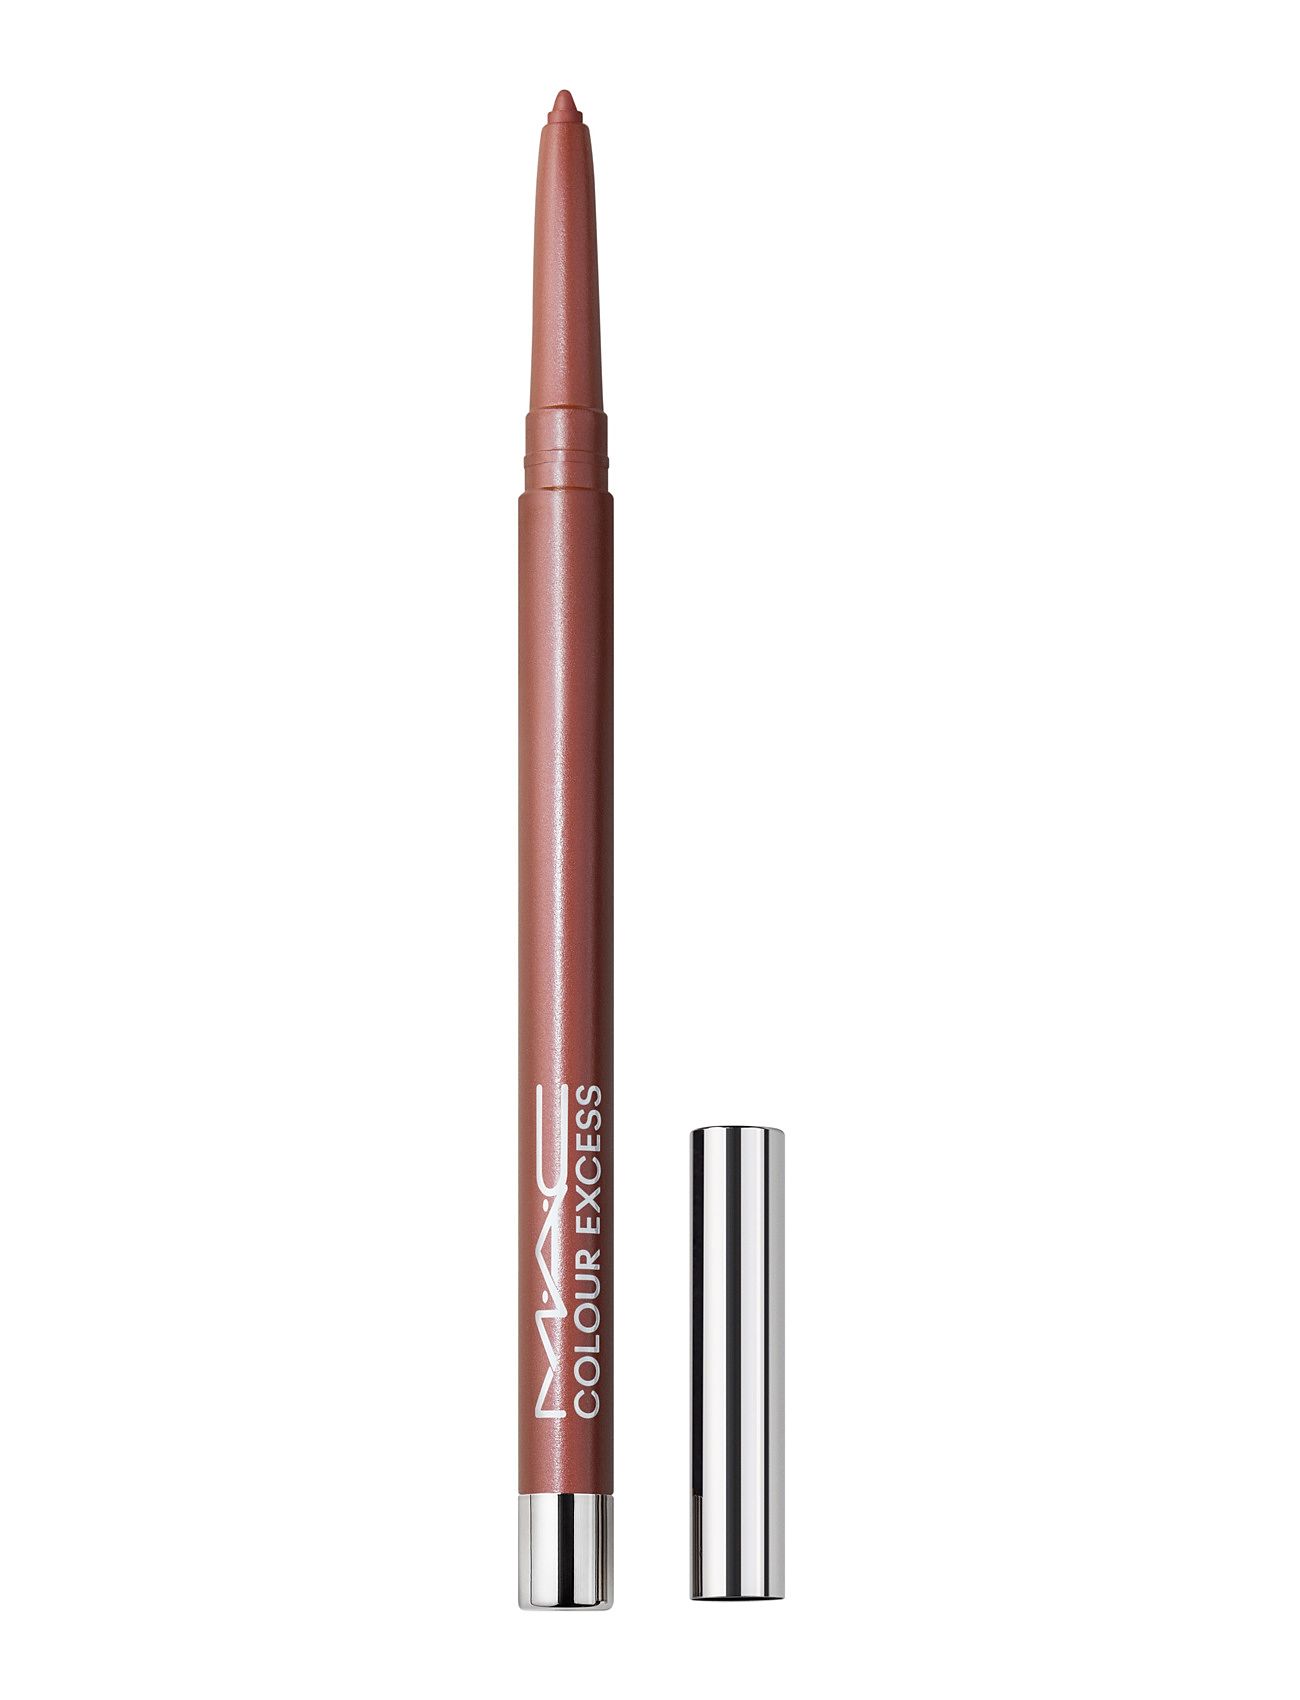 Colour Excess Gel Pencil Eyeliner Makeup Brown MAC